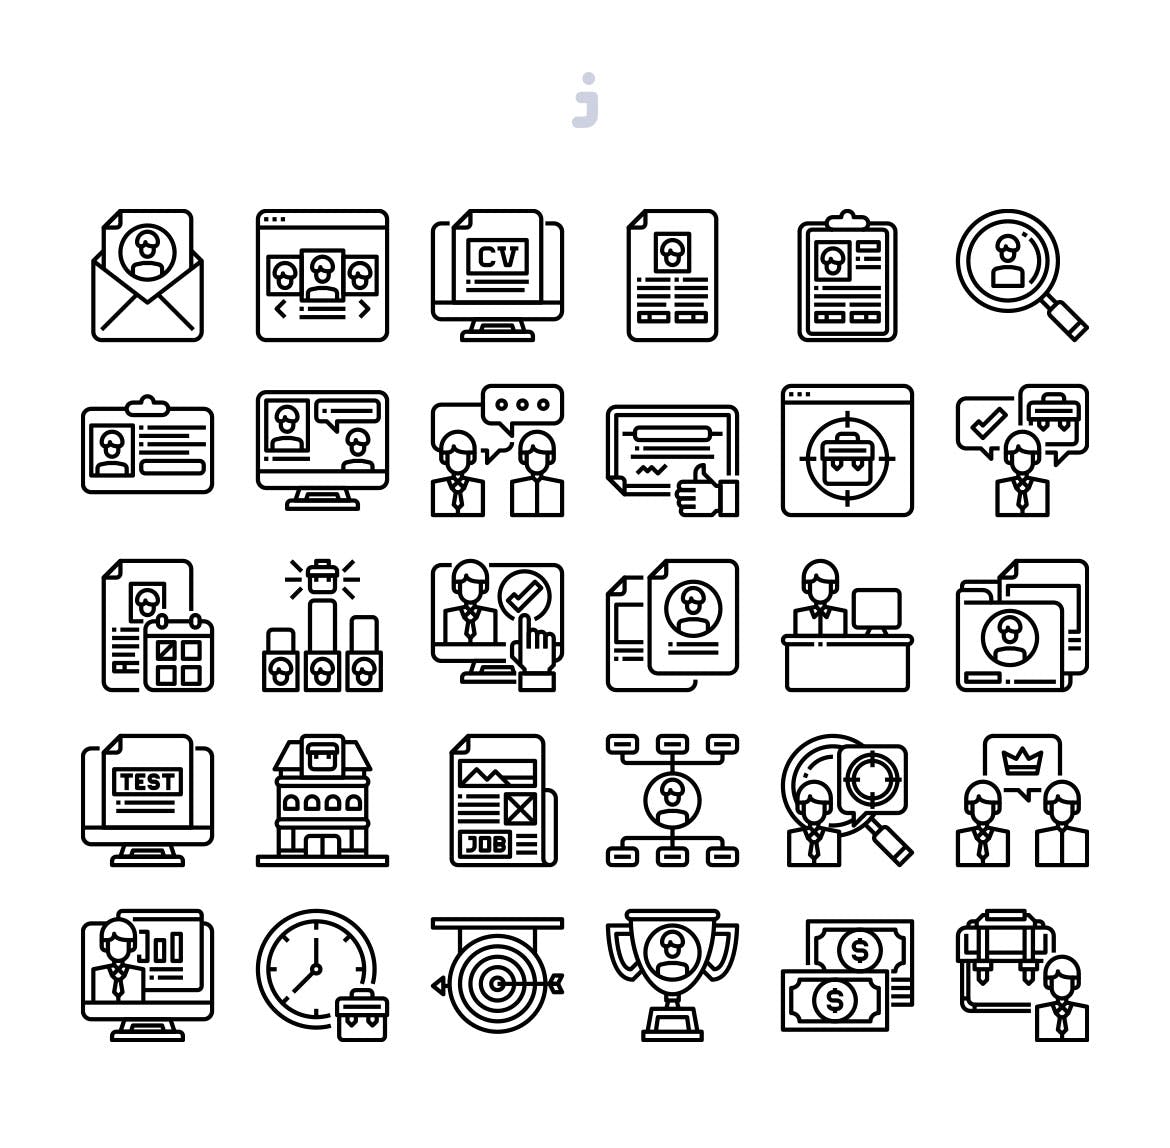 30枚人力资源主题矢量图标 30 Human Resources Icons插图(2)